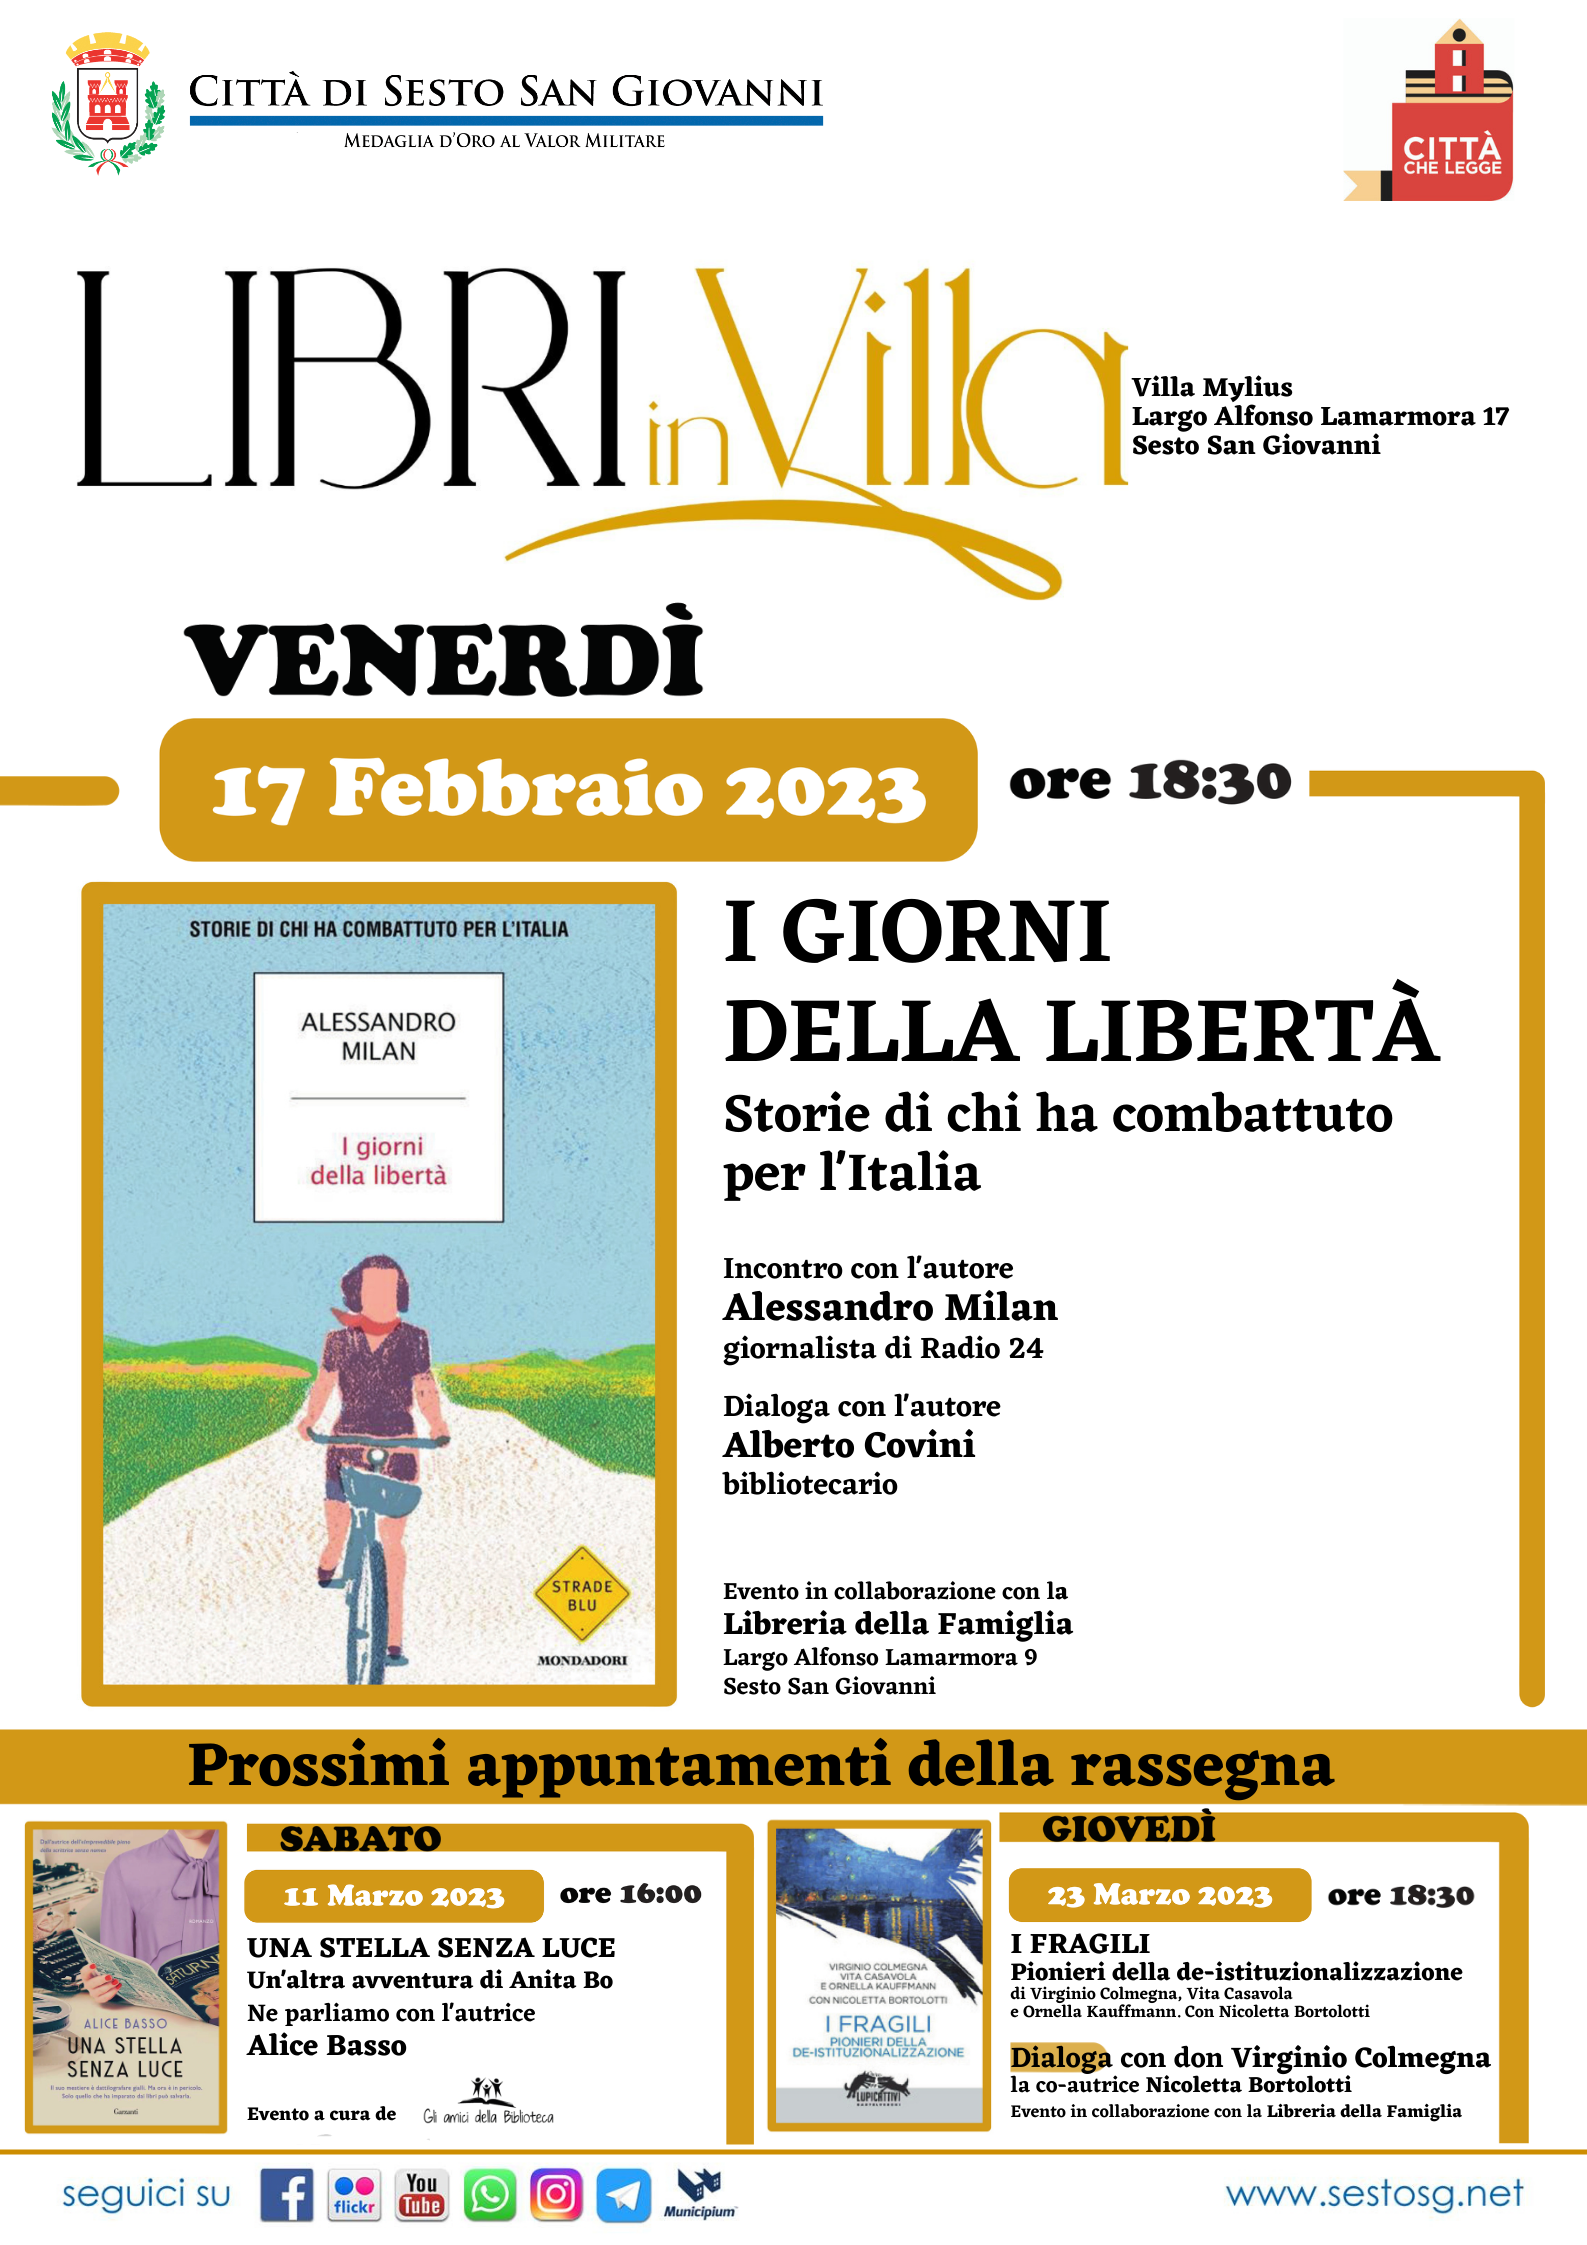 Libri in Villa - Milan - febbraio 2023